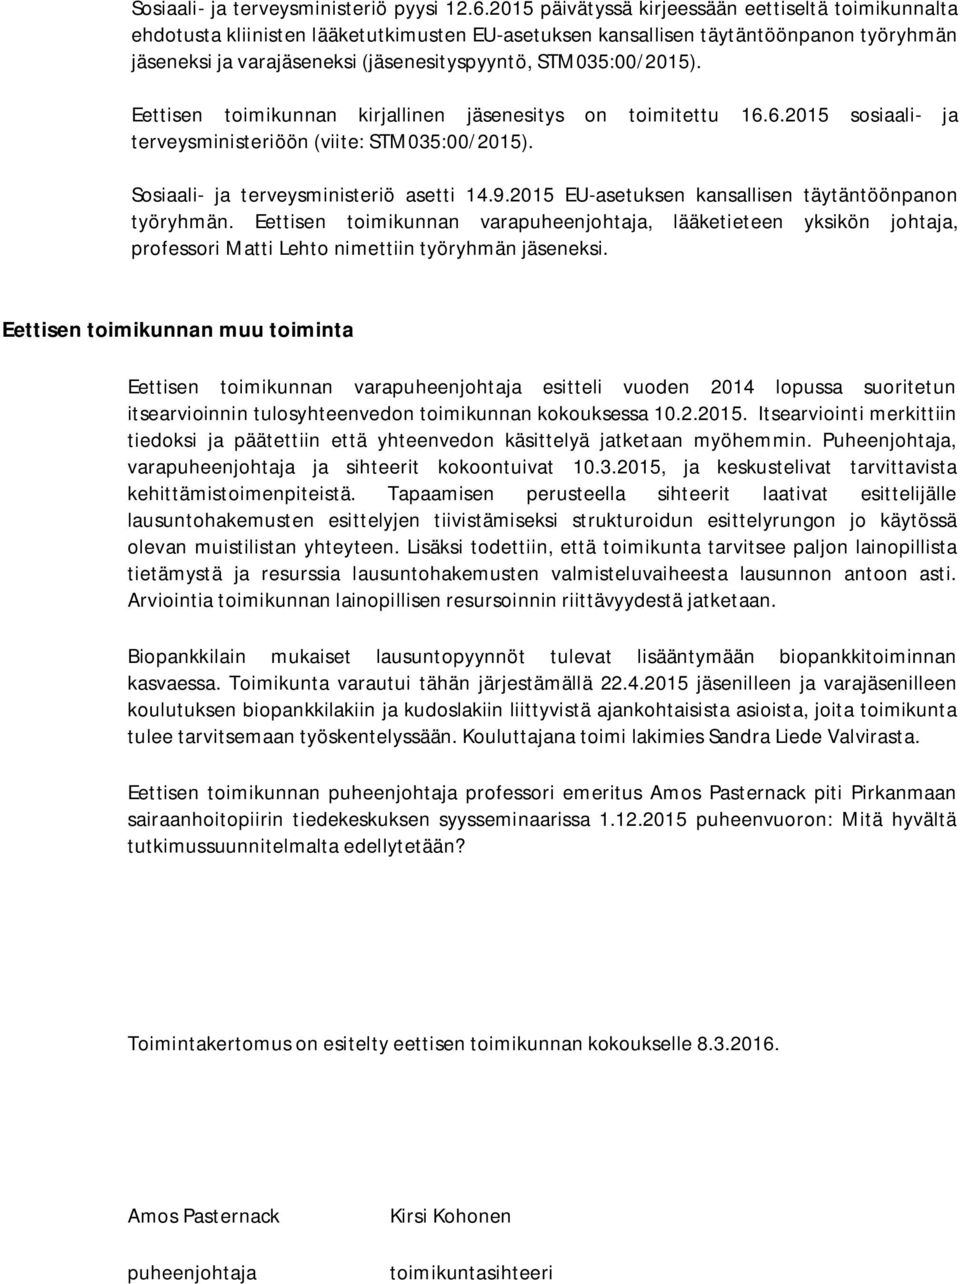 STM035:00/2015). Eettisen toimikunnan kirjallinen jäsenesitys on toimitettu 16.6.2015 sosiaali- ja terveysministeriöön (viite: STM035:00/2015). Sosiaali- ja terveysministeriö asetti 14.9.